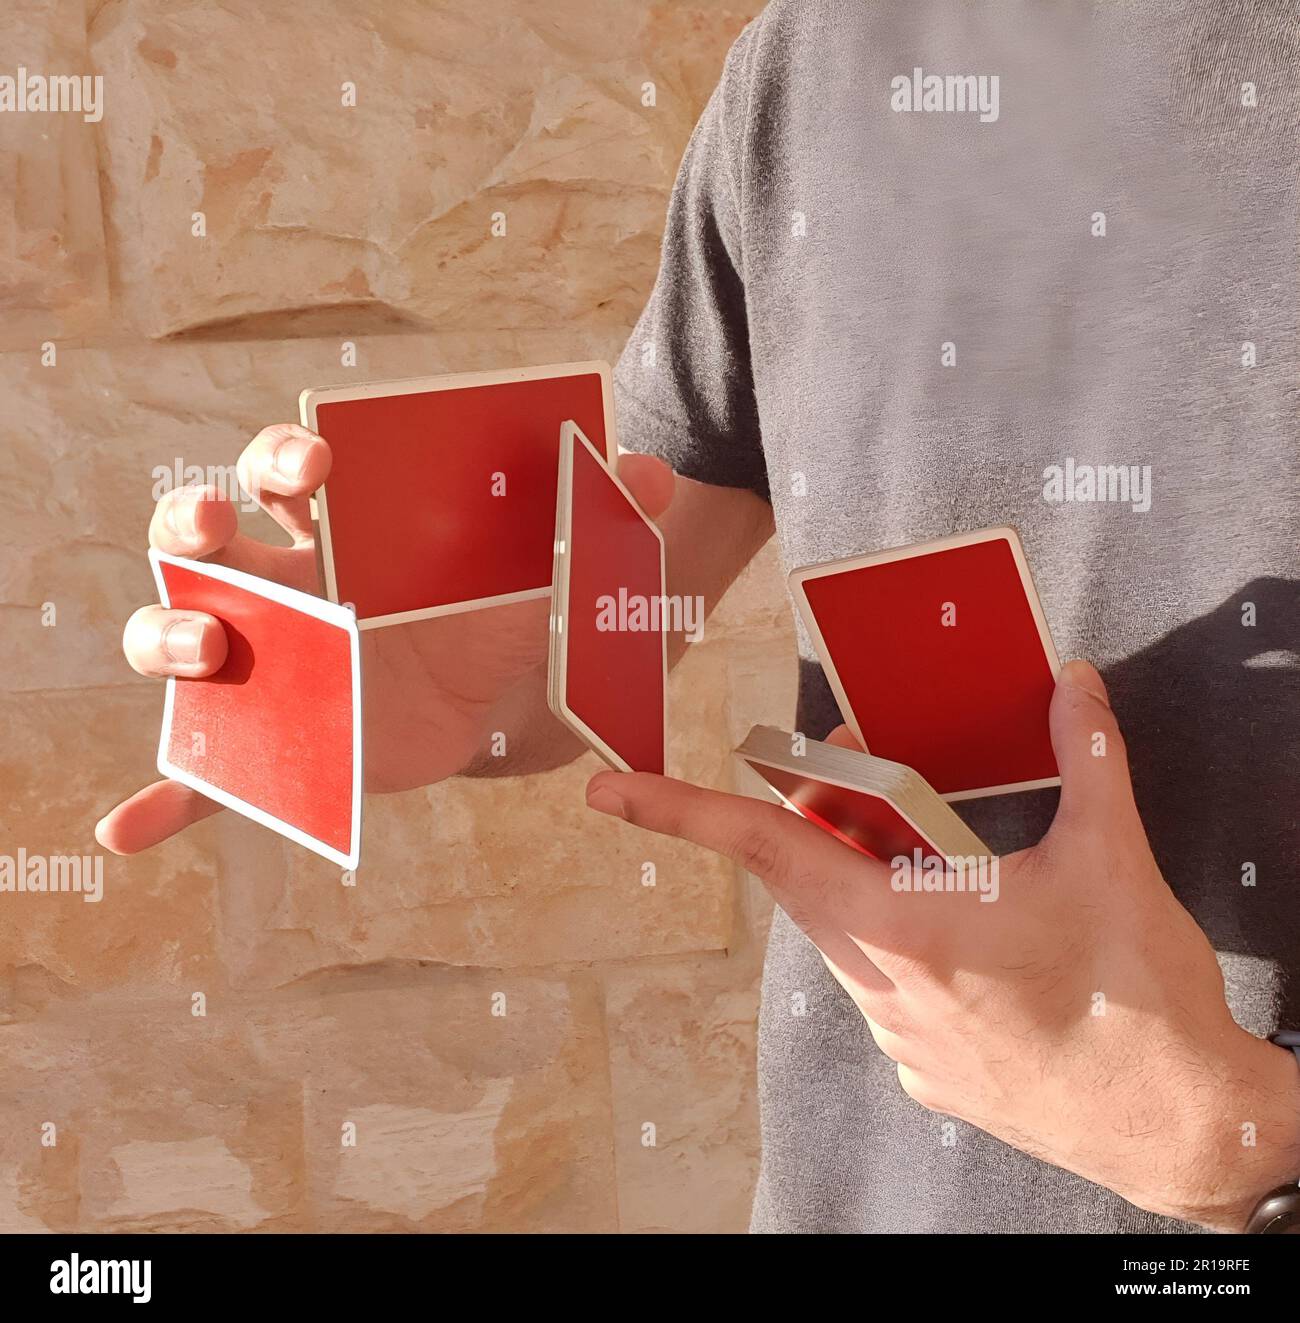 Un giovane che esegue un trucco di carta con un mazzo di carte rosse da gioco. Foto Stock